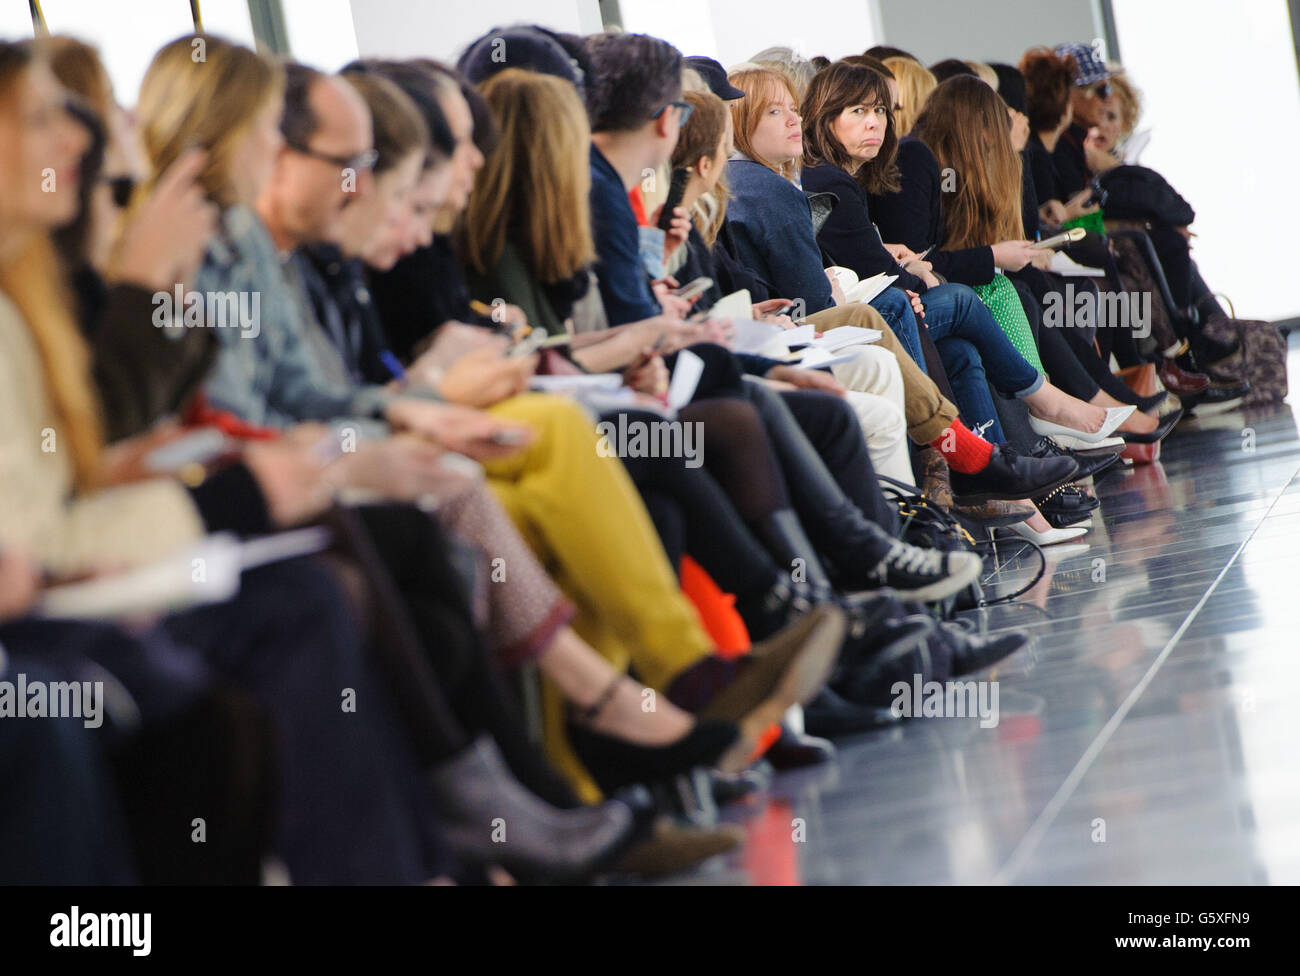 Membri del pubblico durante la sfilata Preen del terzo giorno della London Fashion Week, presso la Heron Tower, Londra. Foto Stock